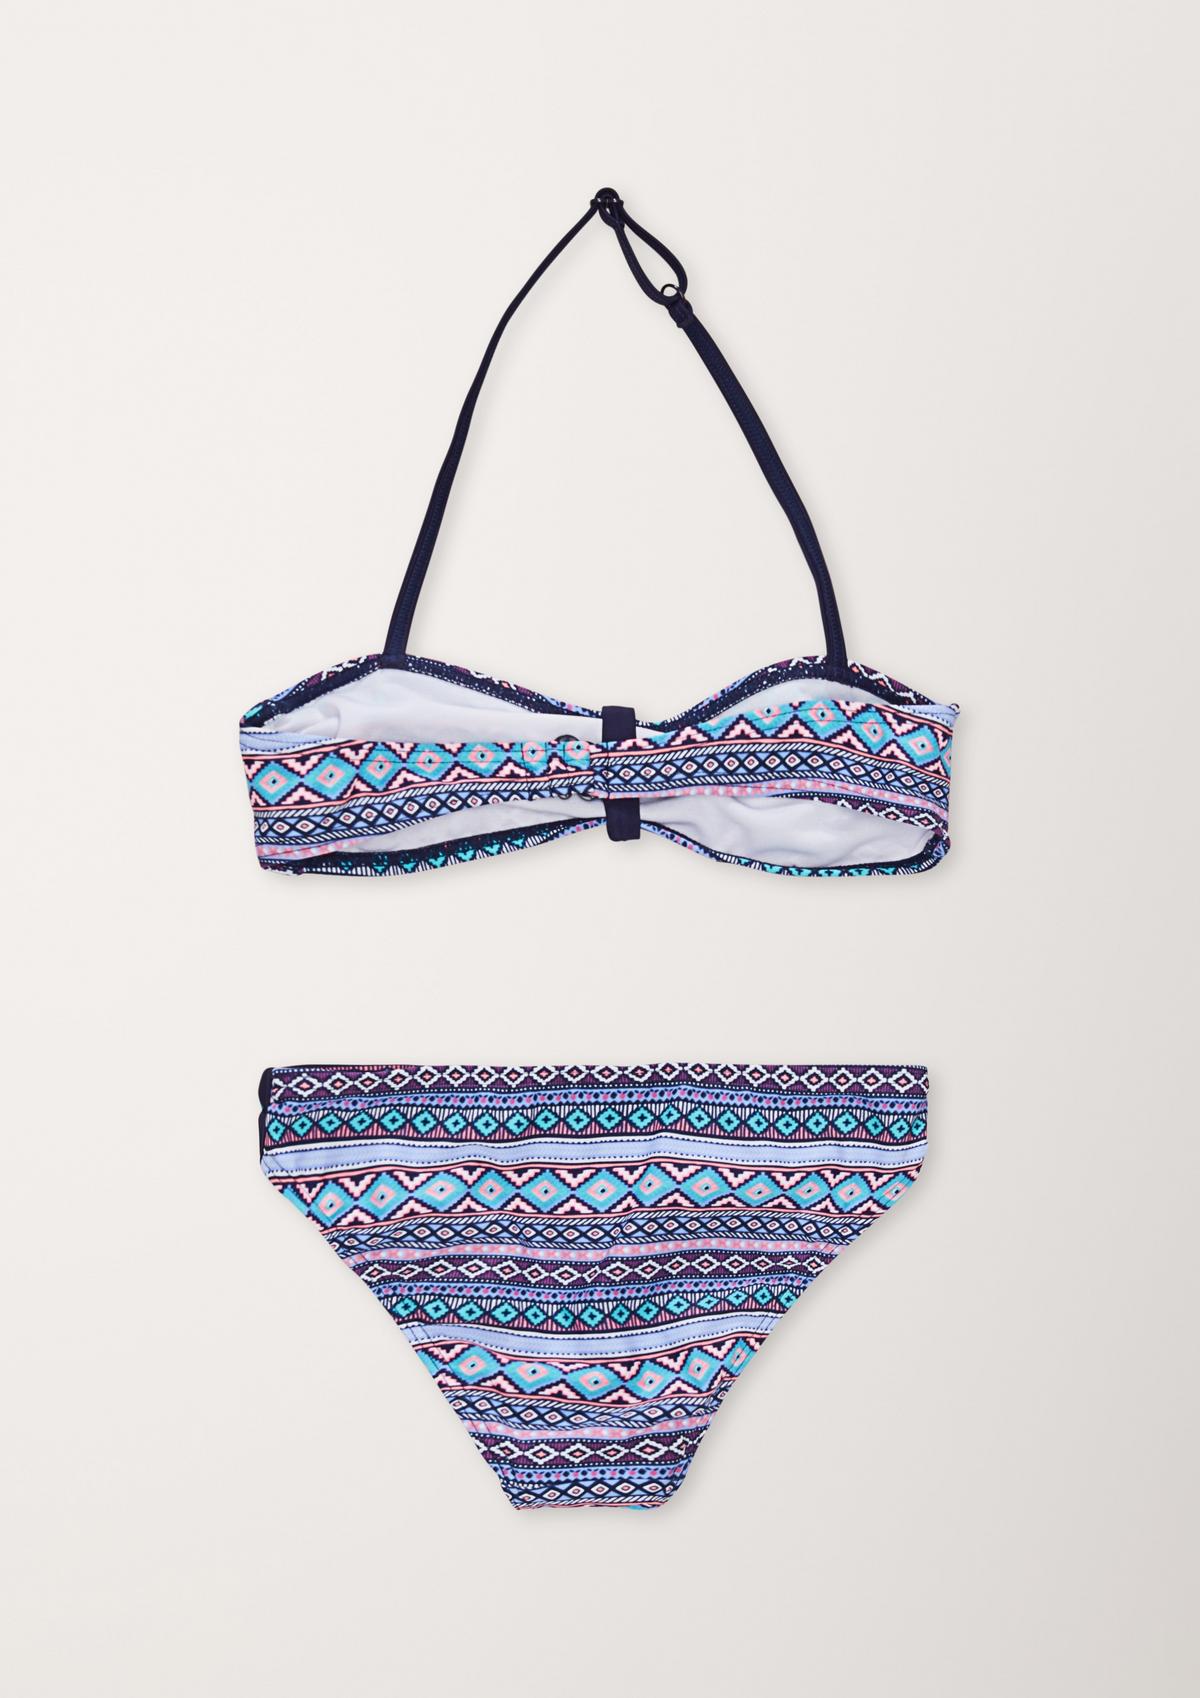 Bandeau-Bikini mit Ethno-Muster ozeanblau 